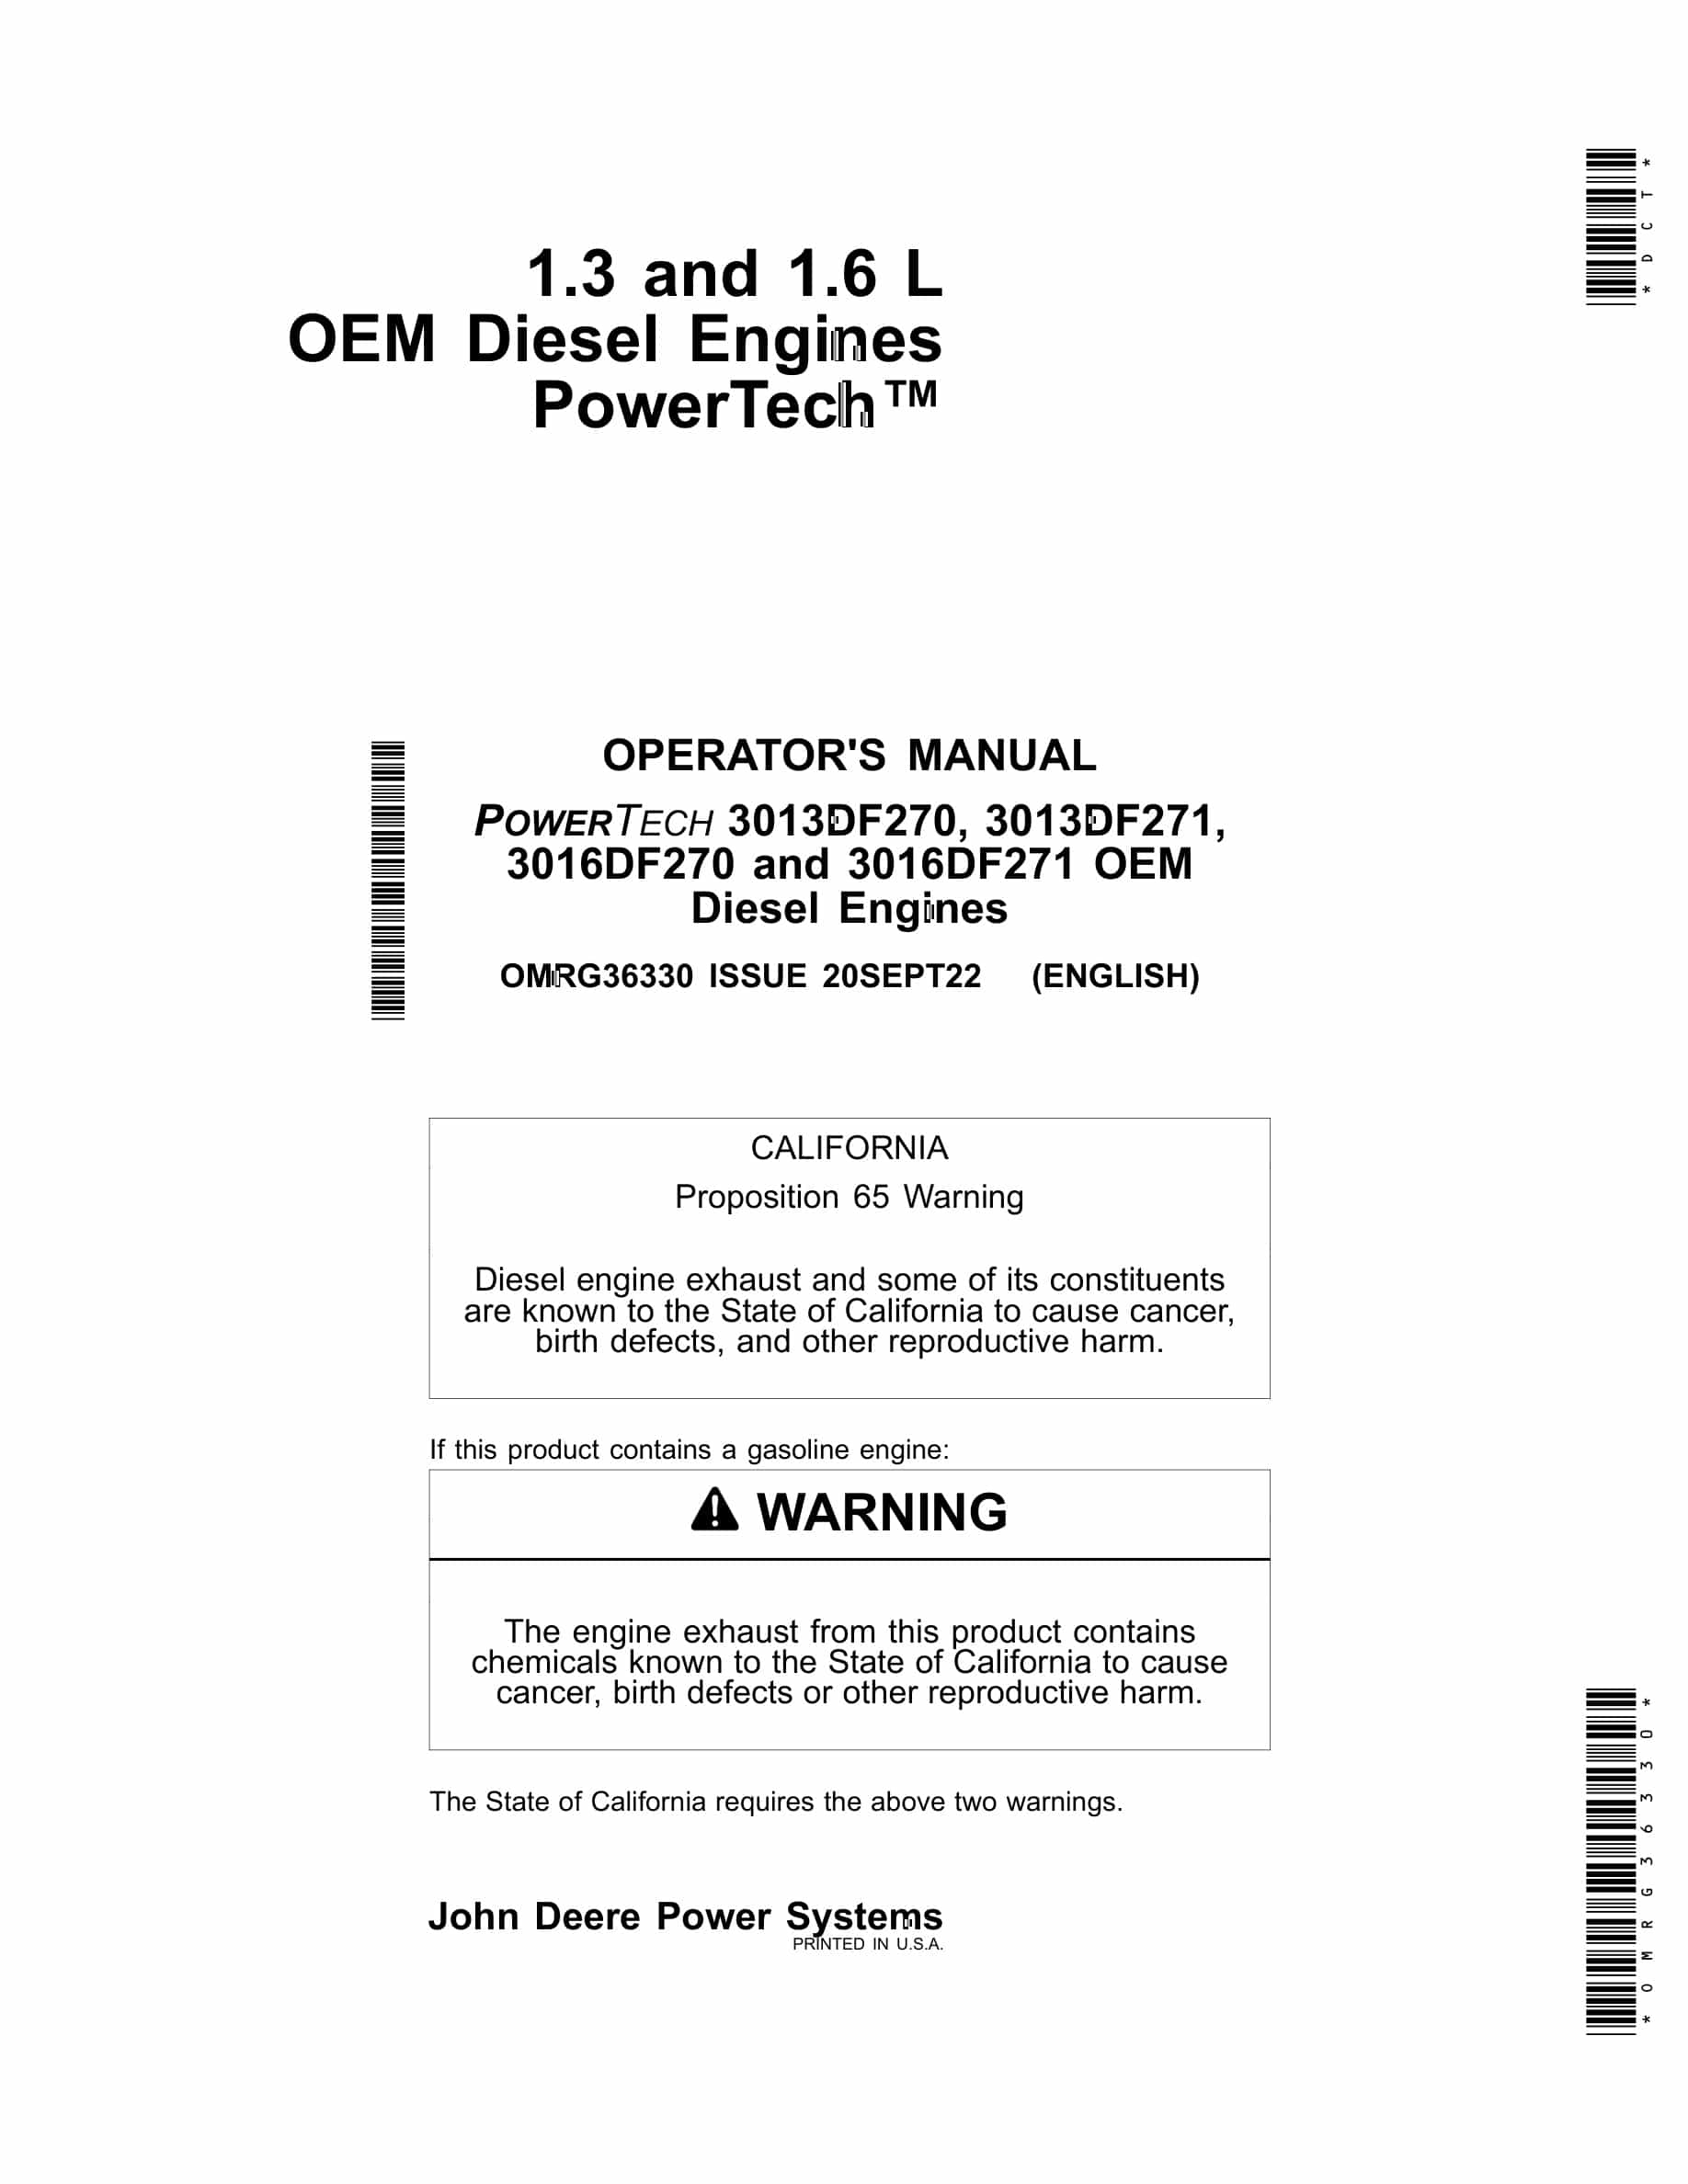 John Deere PowerTech 3013DF270, 3013DF271, 3016DF270 and 3016DF271 OEM Diesel Engines Operator Manual OMRG36330-1